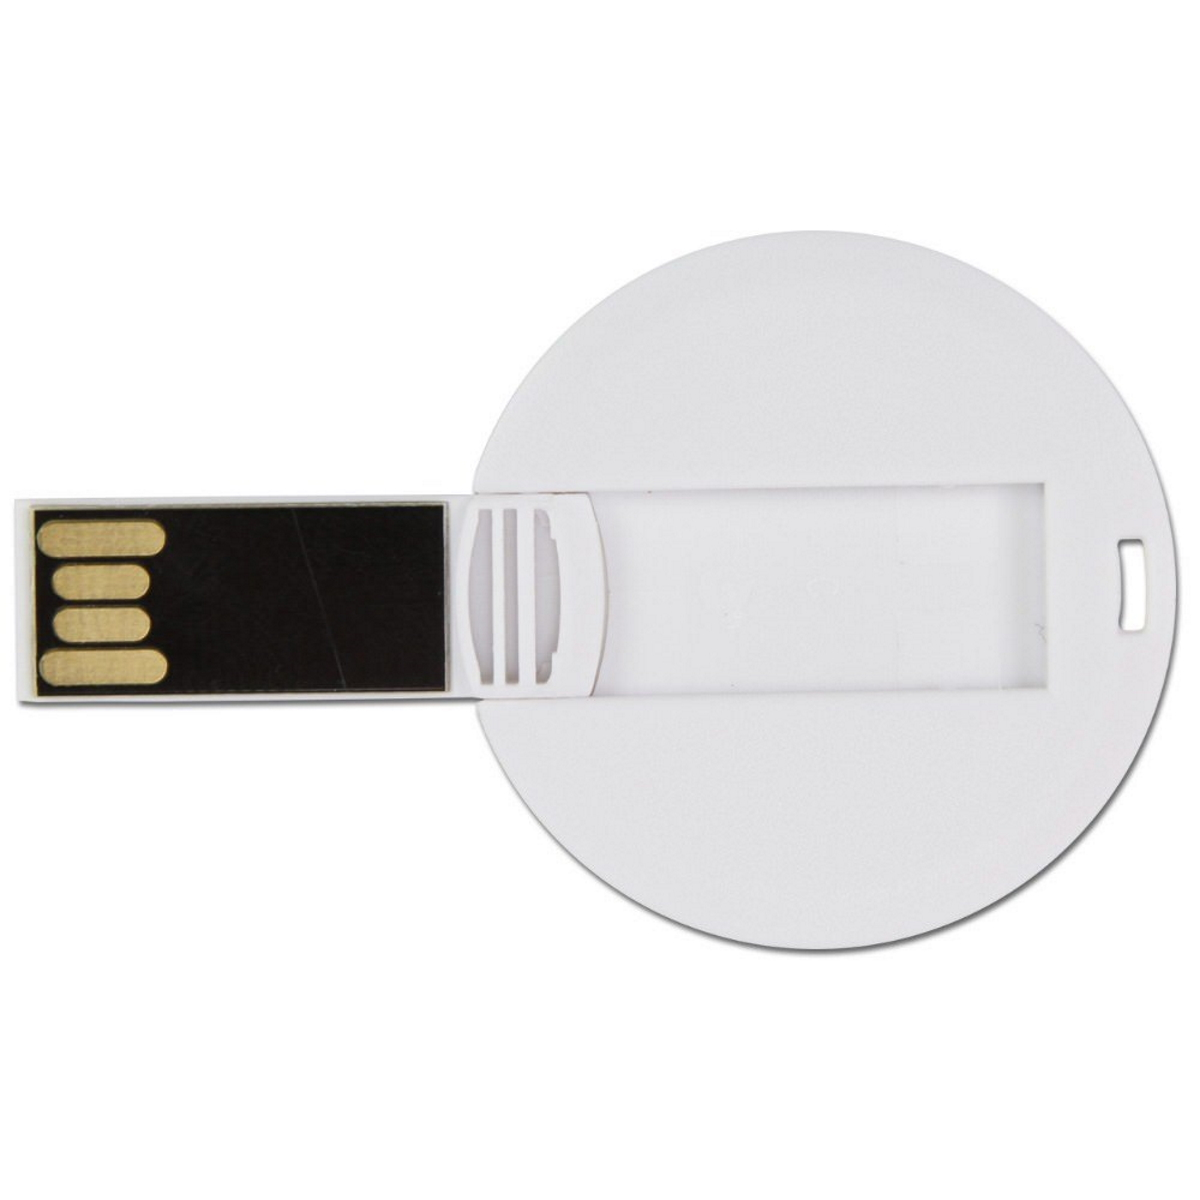 USB GERMANY ® USB-Stick GB) 8 DISC (Weiß